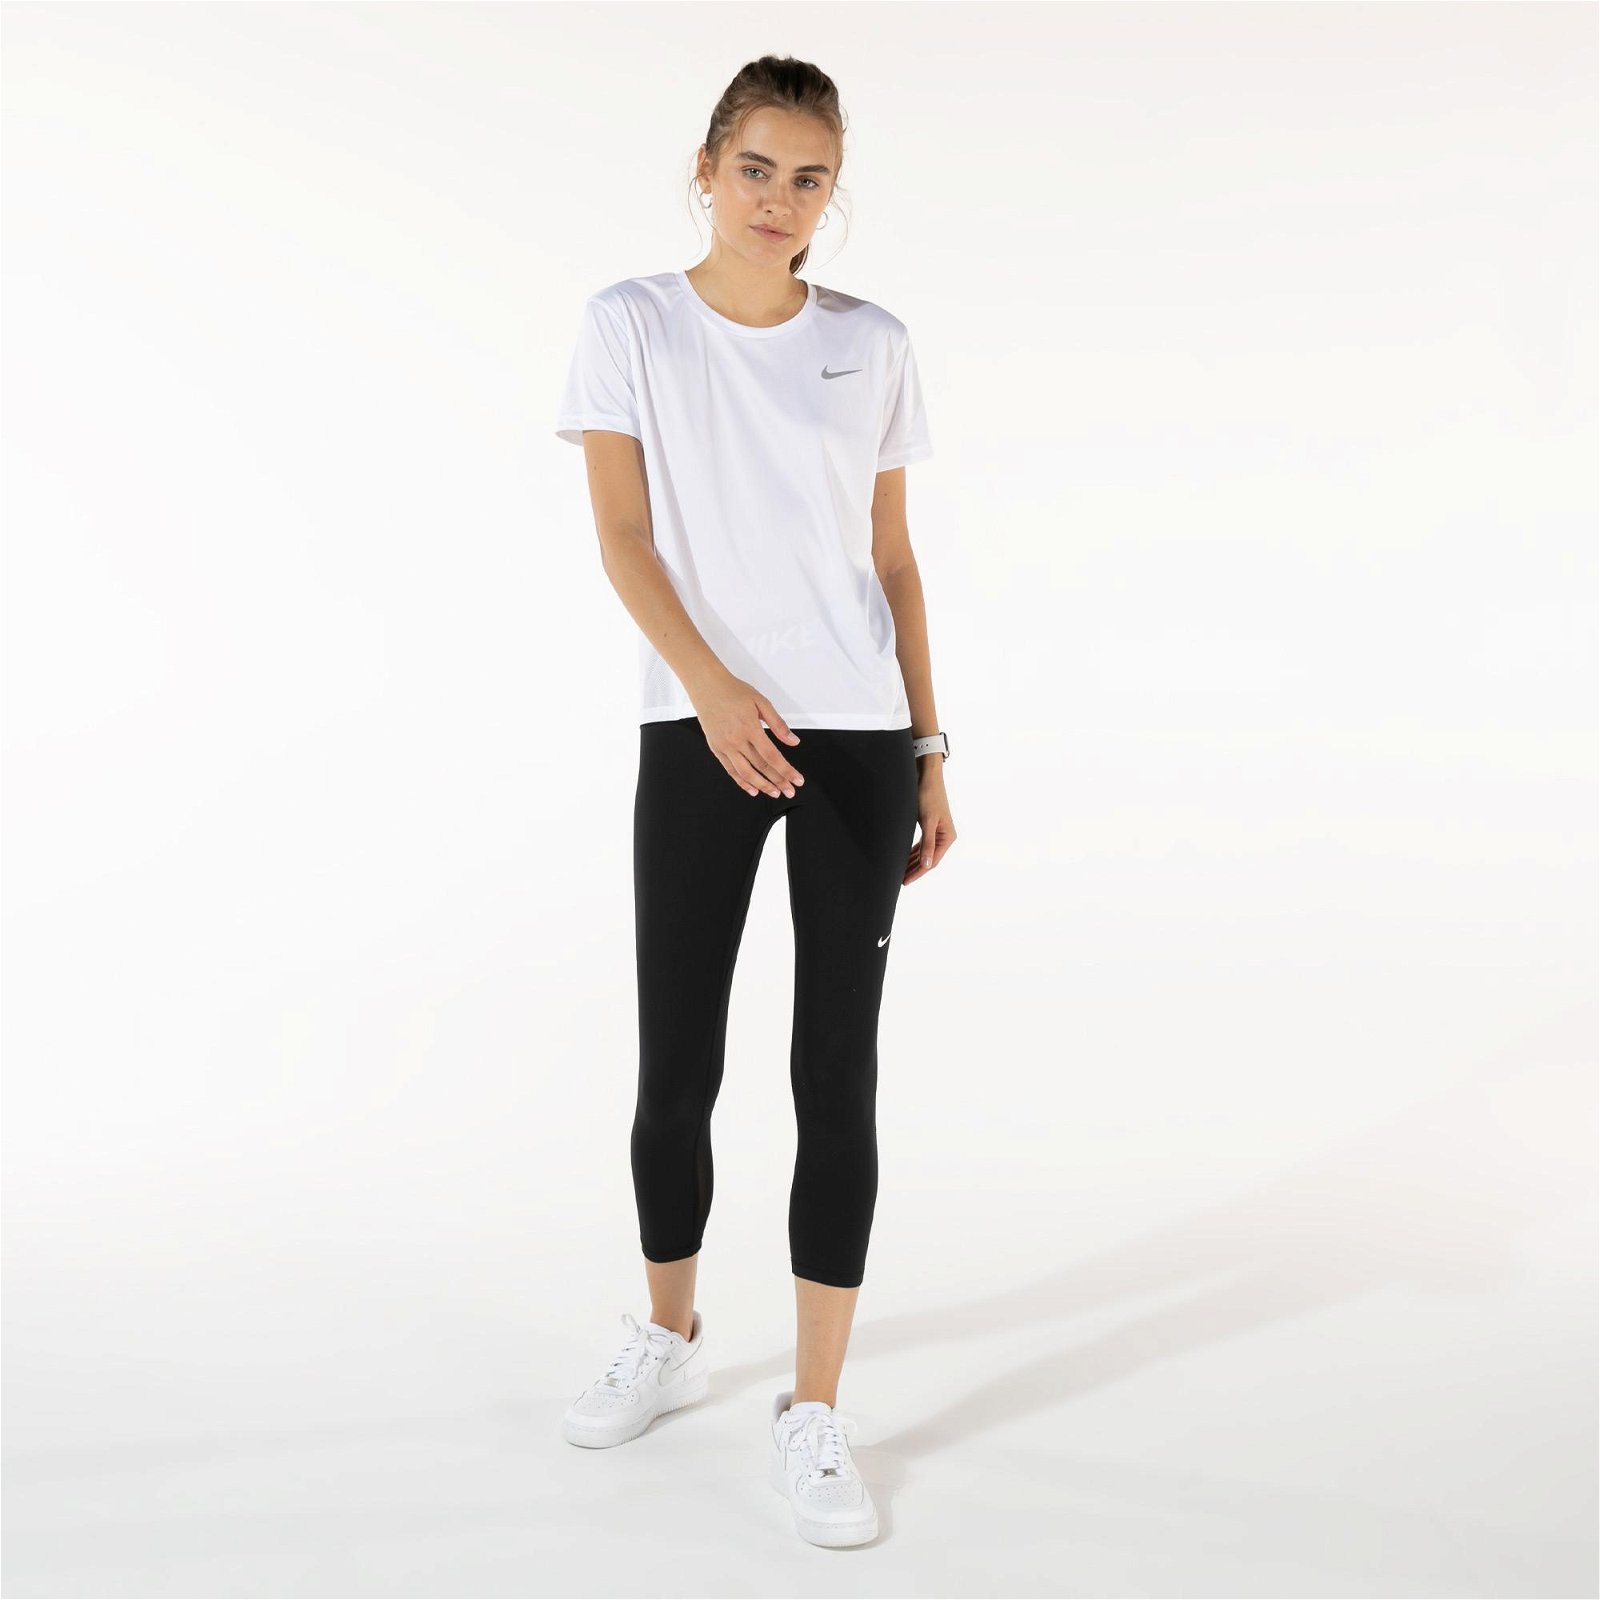 Nike Miler Top Kadın Beyaz T-Shirt